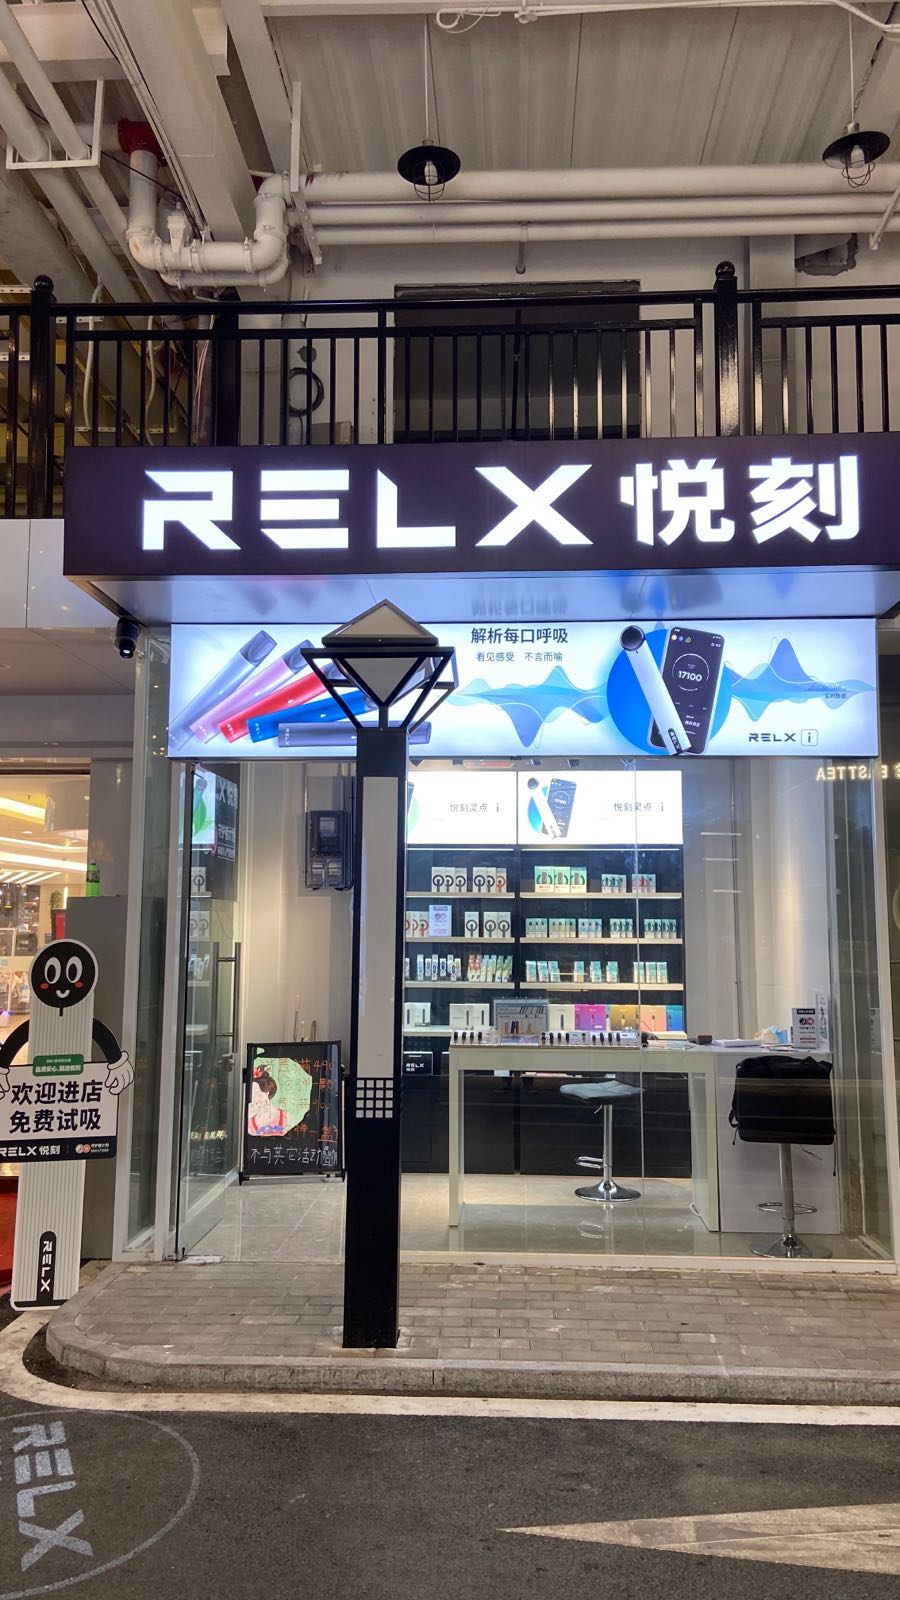 relx悦刻专营店(岭南购物城7街店)